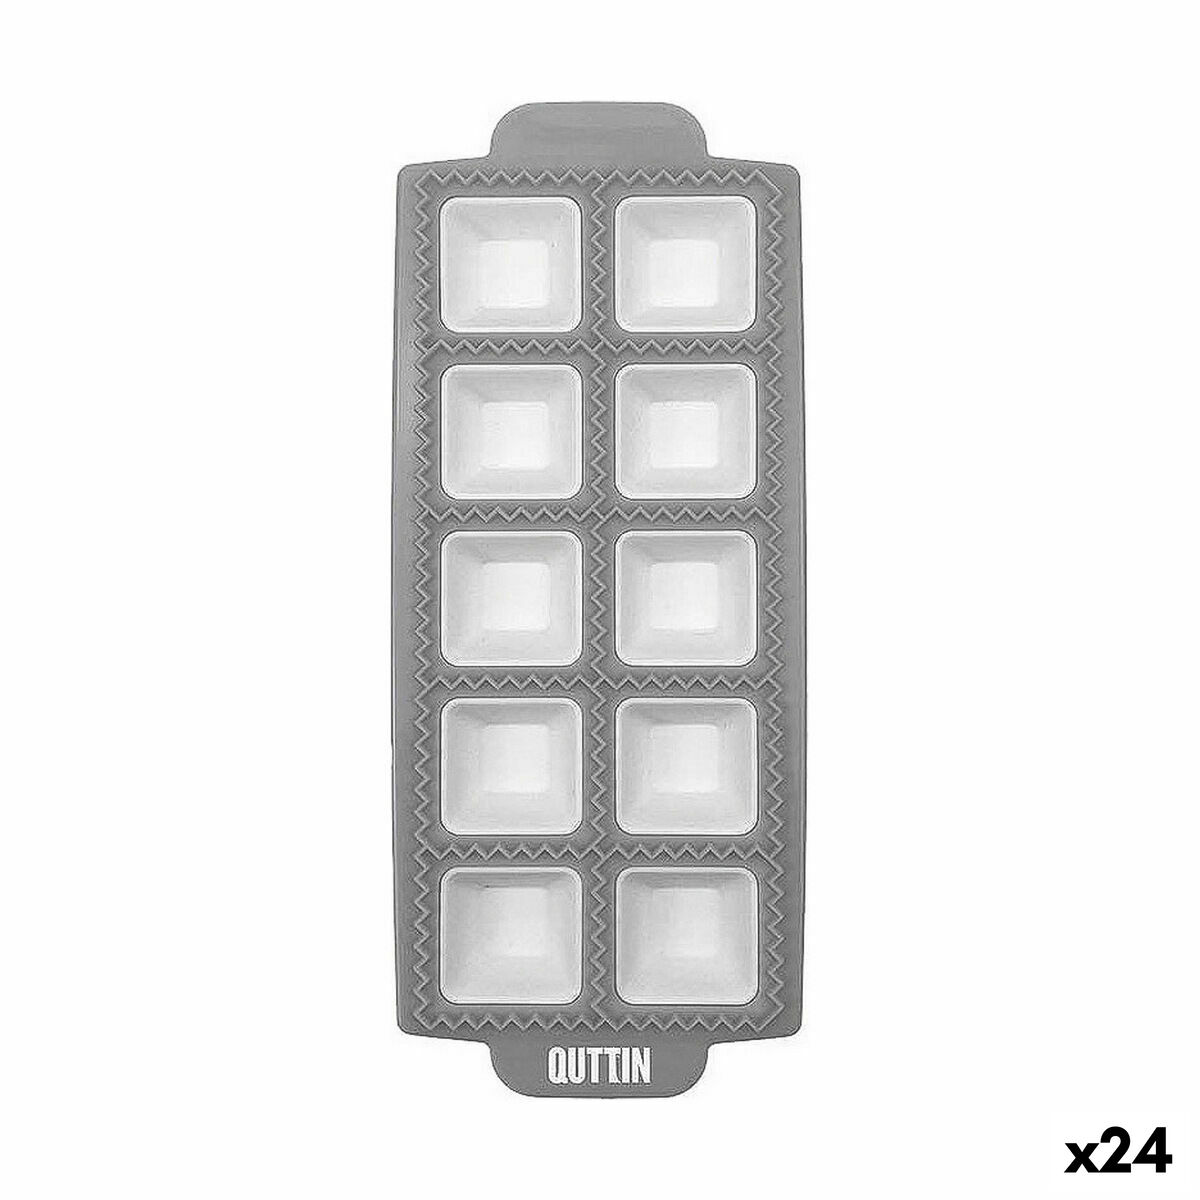 Шпатула Quttin Soft 24 x 5 x 1,5 cm (36 броя)